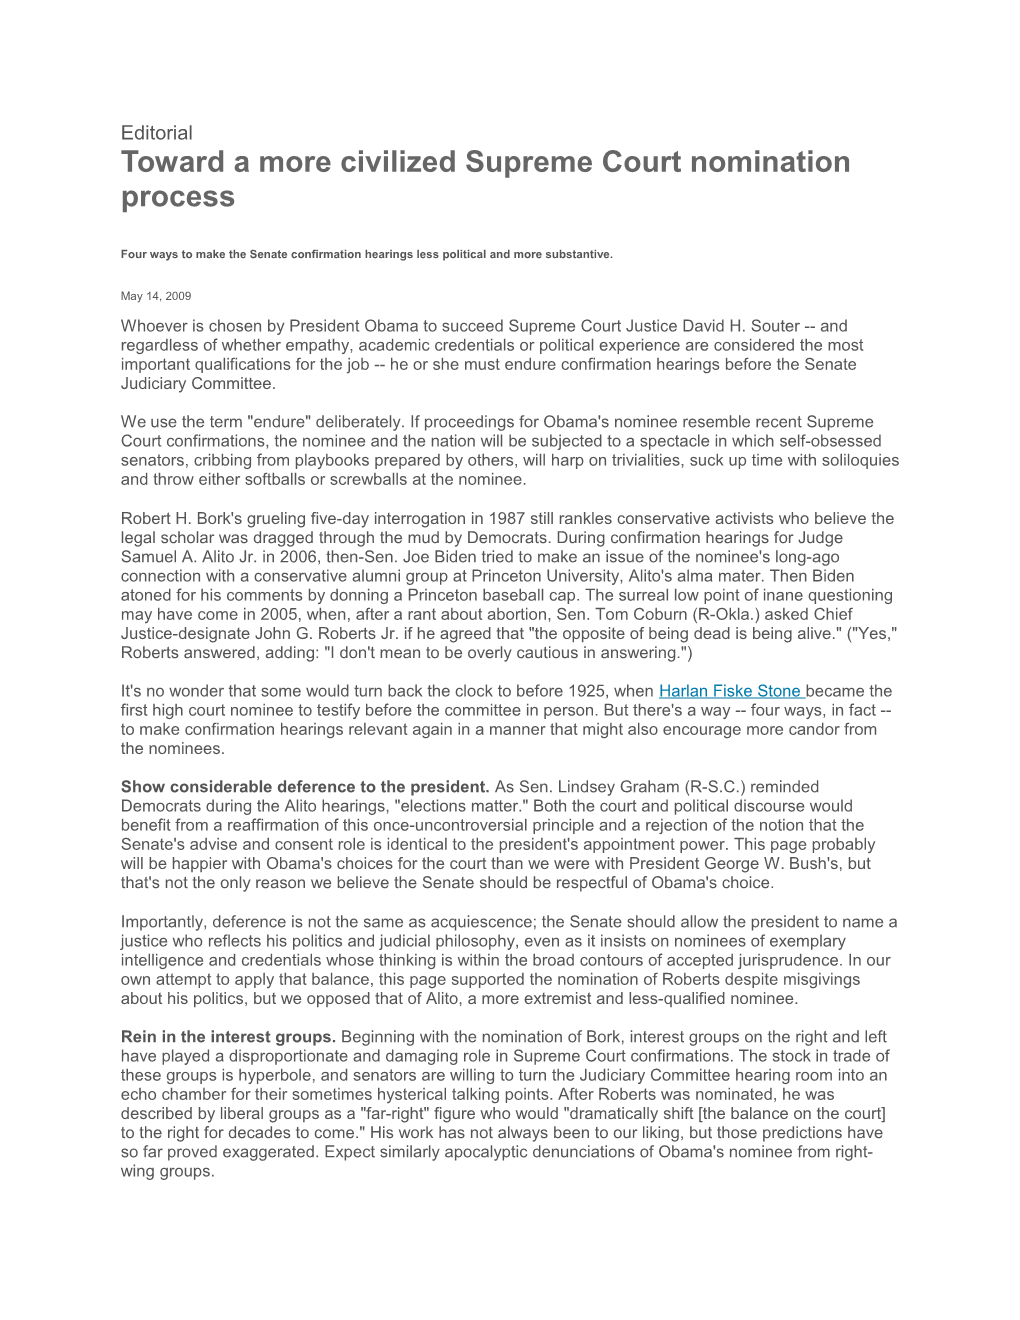 Toward a More Civilized Supreme Court Nomination Process